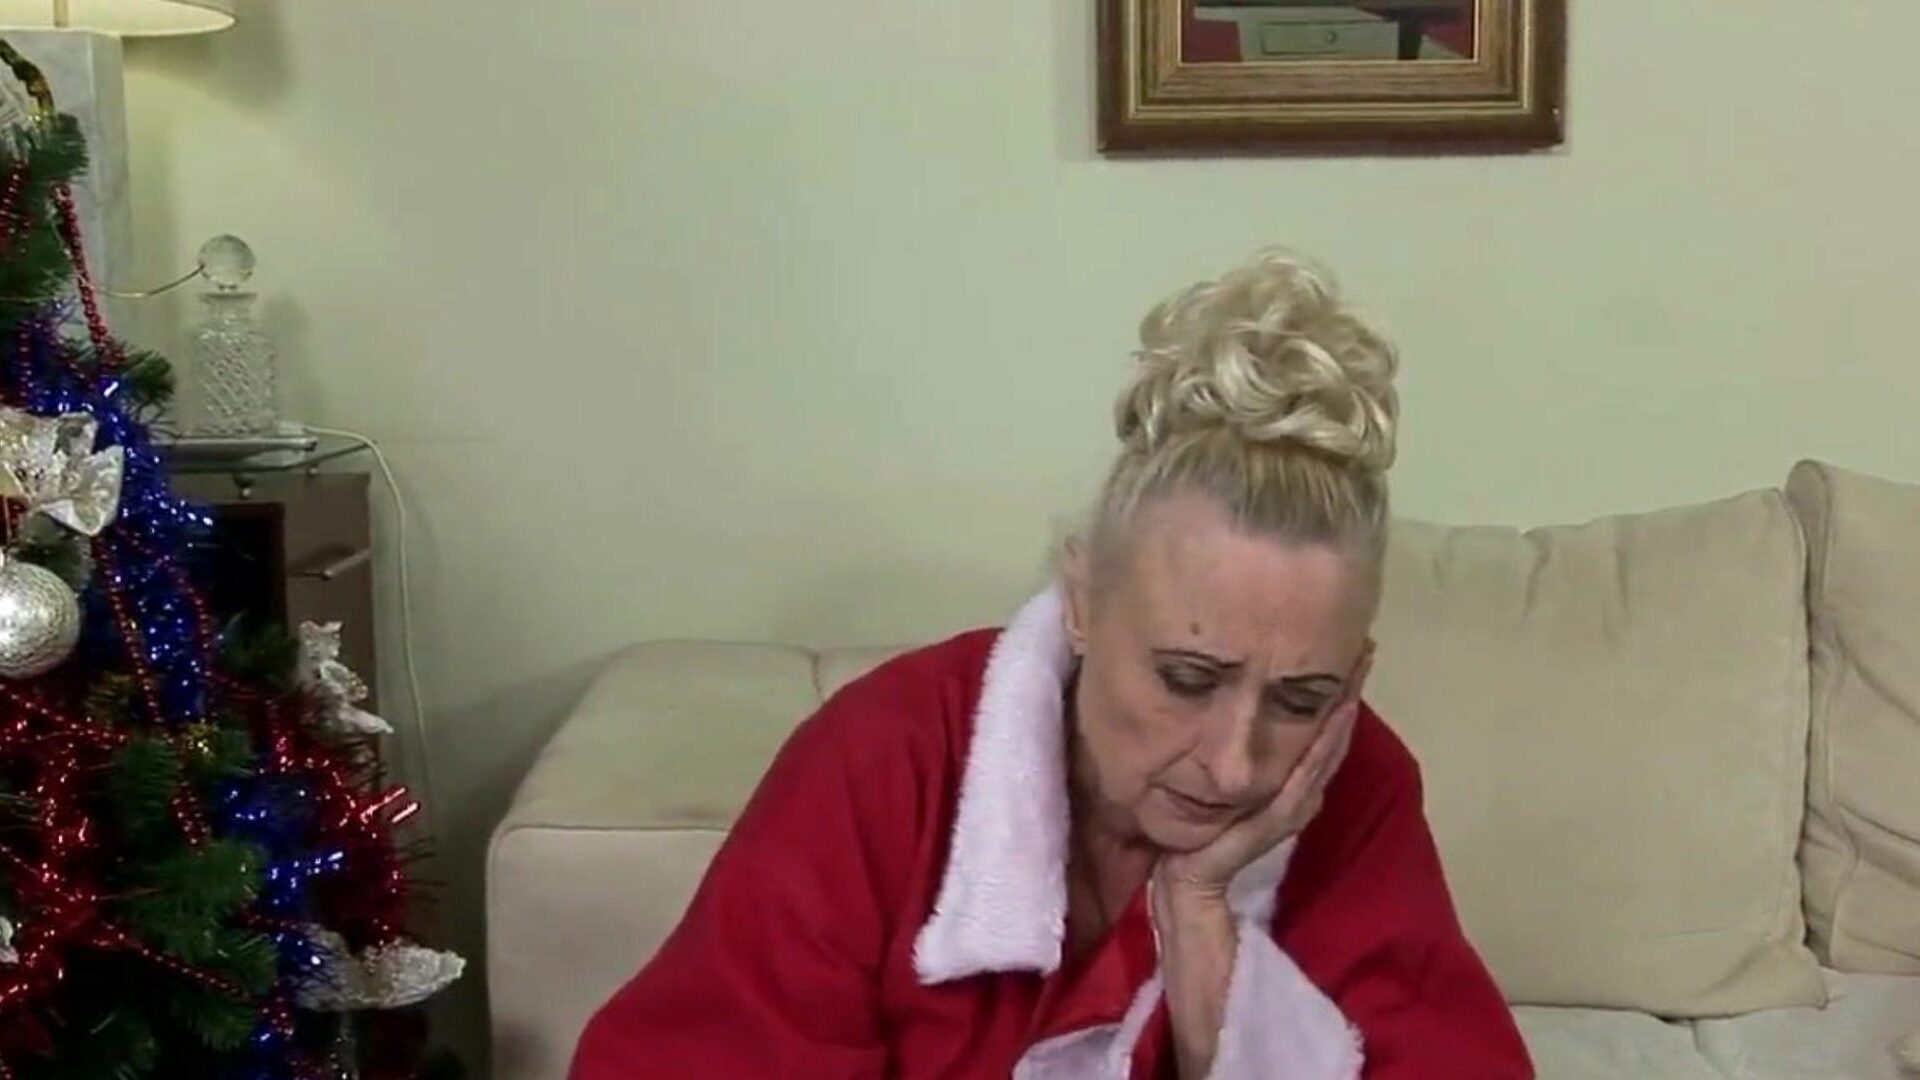 Бабушка не хочет провести Рождество в одиночку: порно e8 смотреть бабуля не хочет провести Рождество в одиночку эпизод на xhamster - окончательный архив бесплатно для все свободной бабули и эпизодов HD порно трубки бабушки бесплатно труб